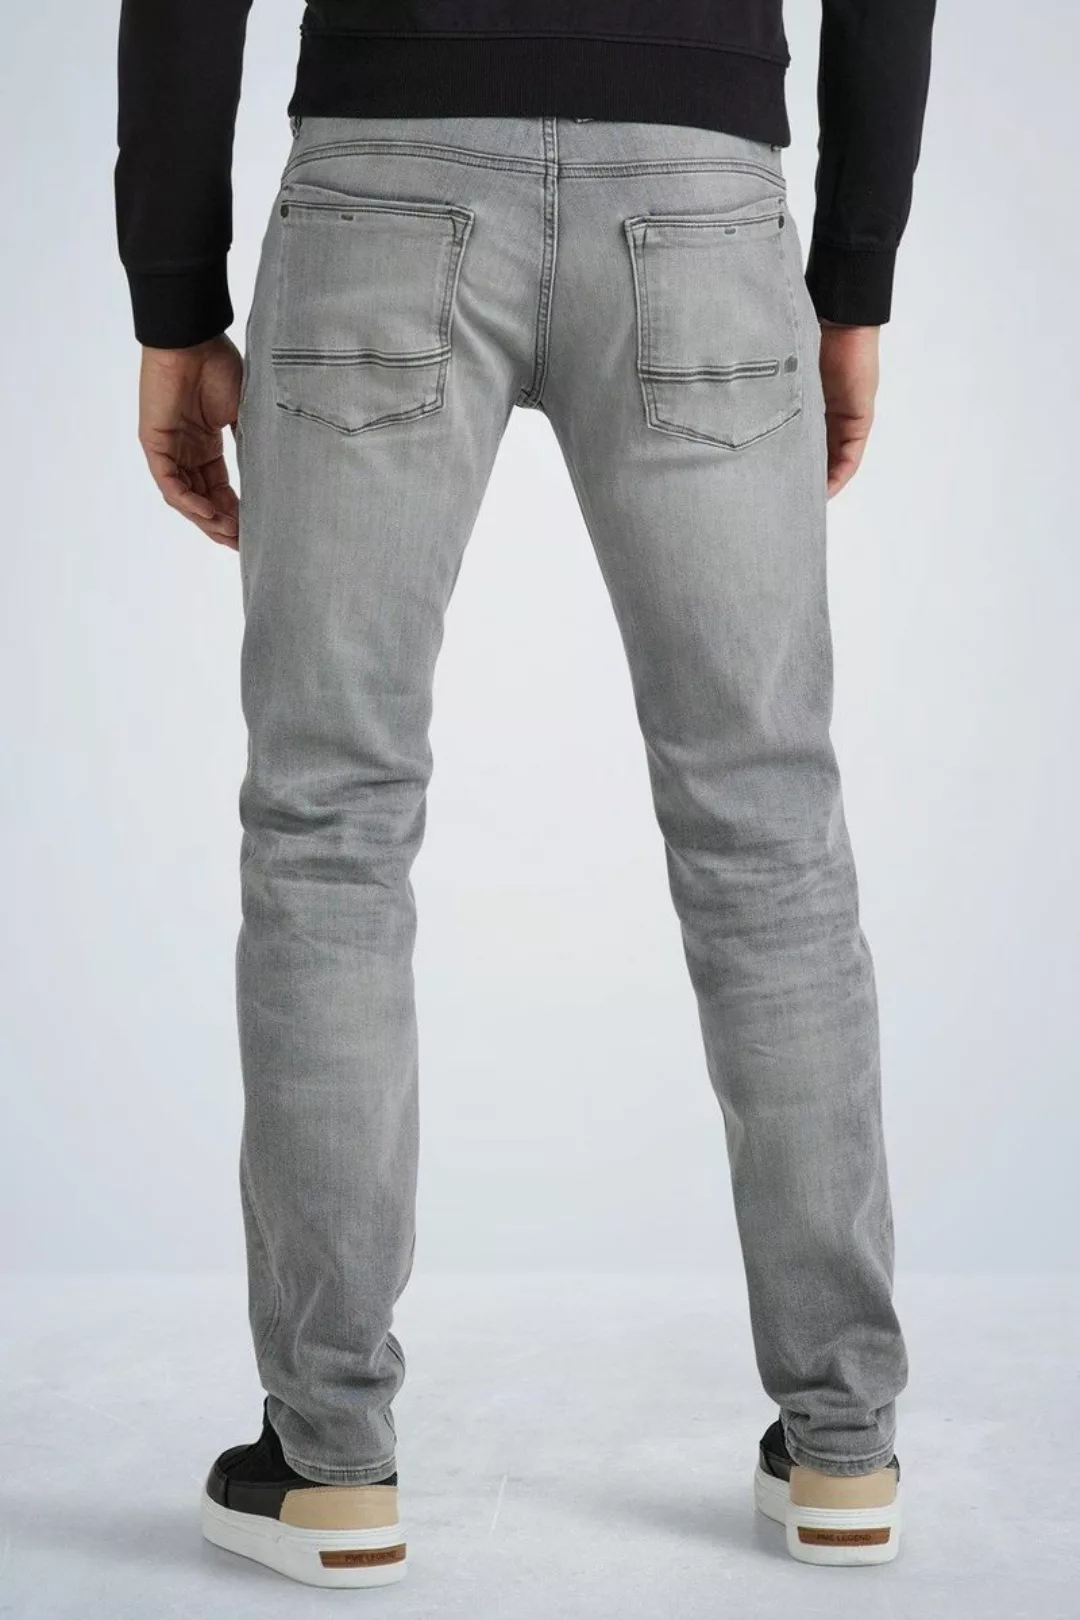 PME Legend Commander 3.0 Jeans Grau - Größe W 34 - L 32 günstig online kaufen